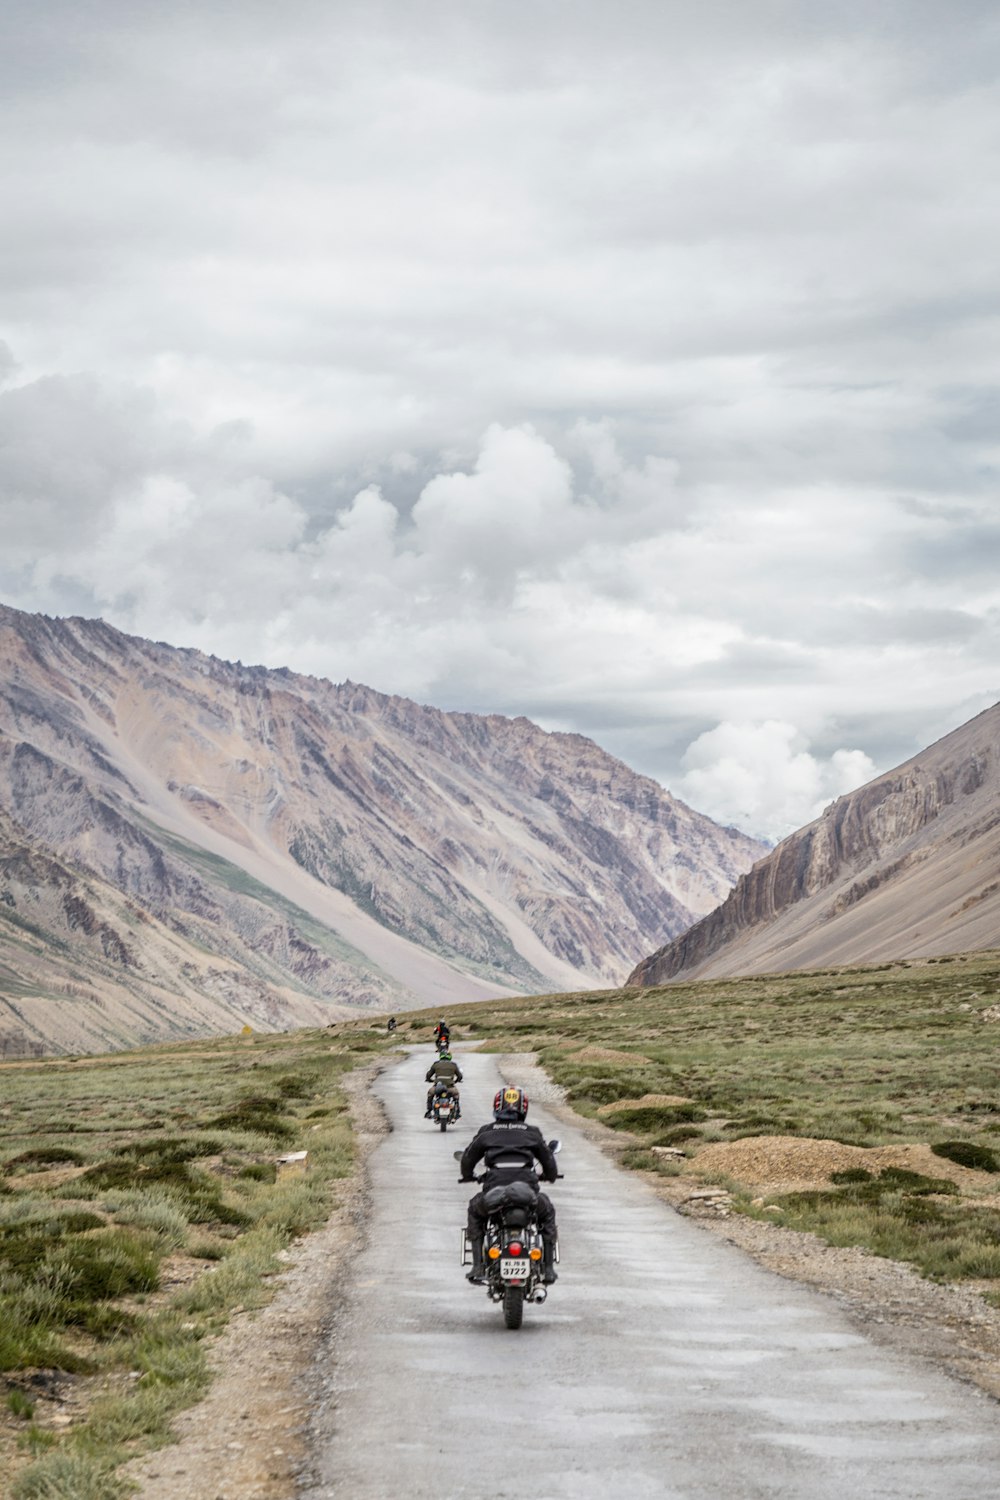 Duas motocicletas dirigindo na estrada cinza